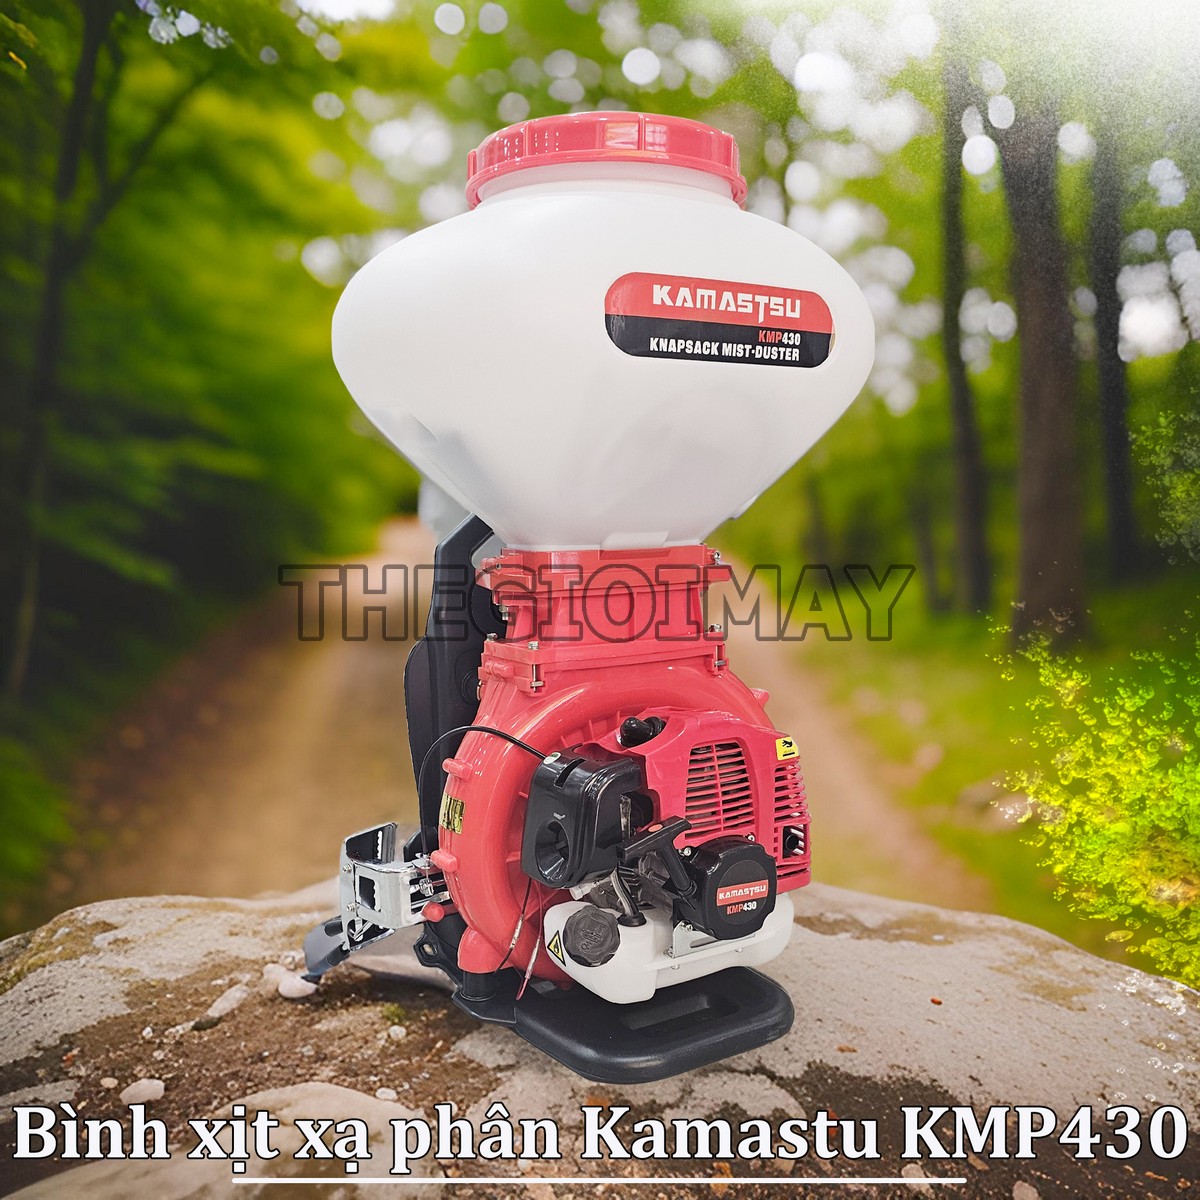 Bình xịt xạ phân Kamatsu KMP430 26L